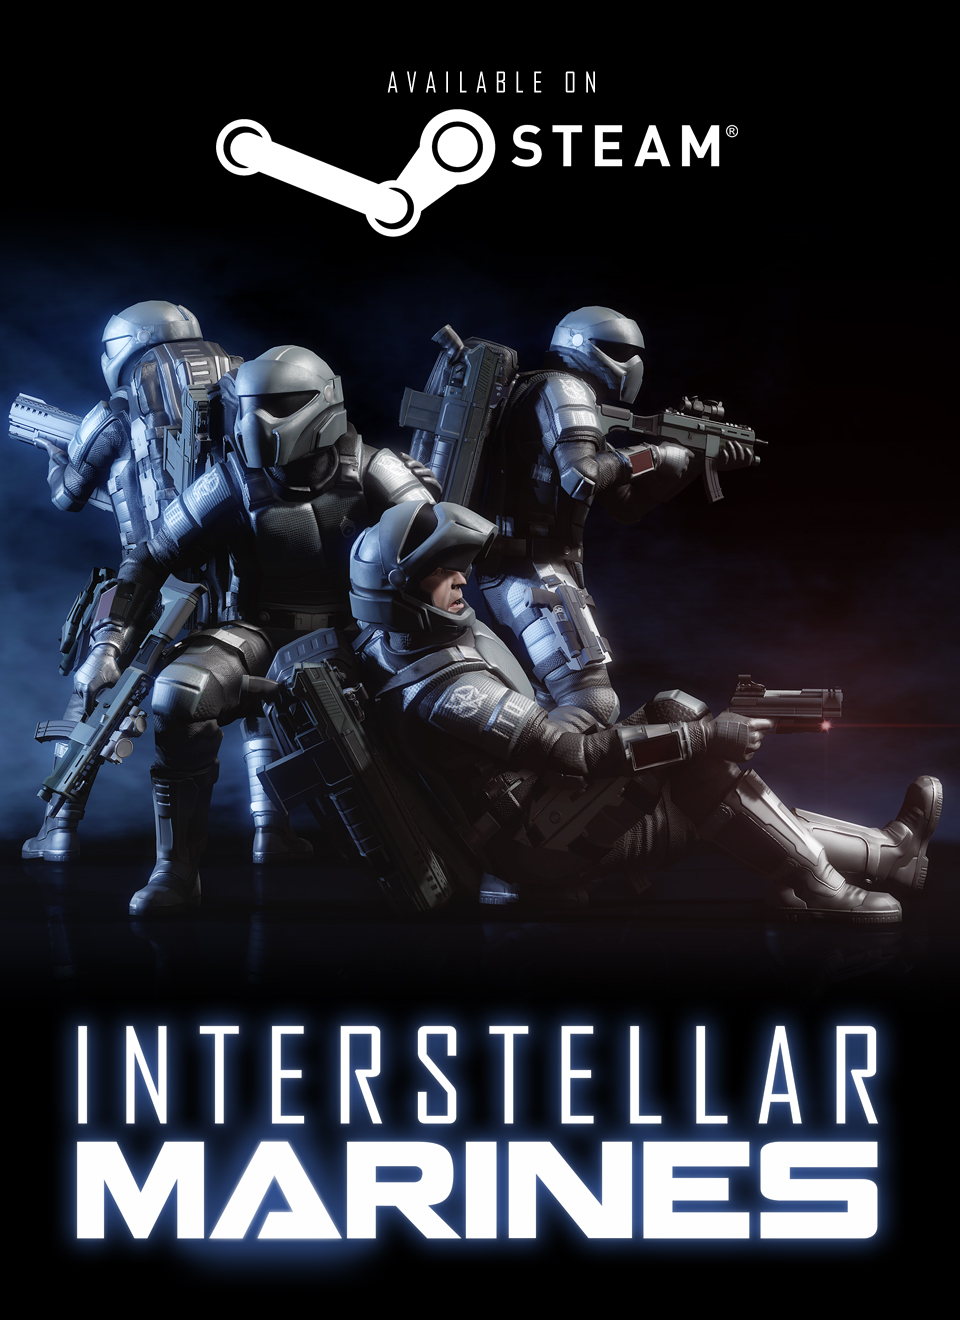 Webgame: Interstellar Marines é um FPS de qualidade para seu